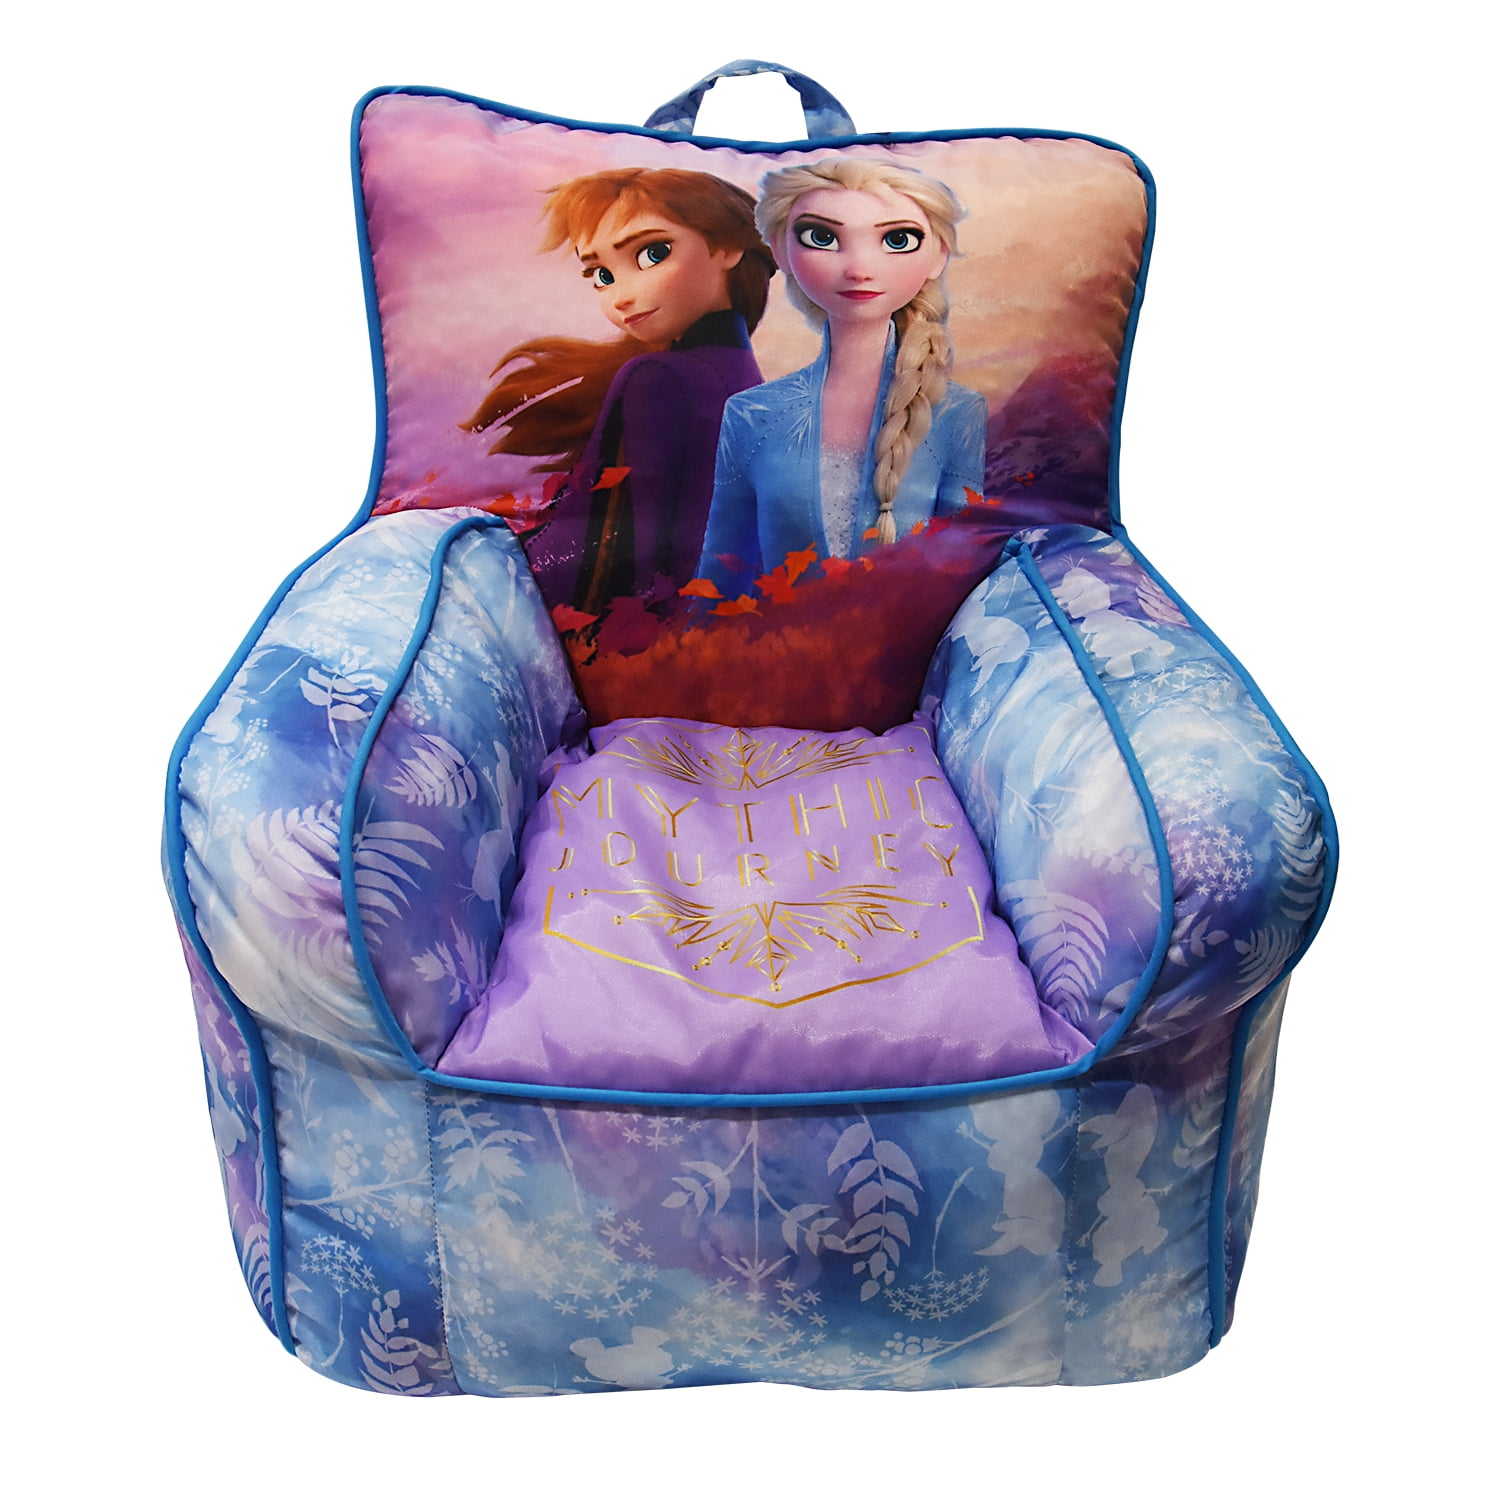 Disney Frozen 2 Elsa Toddler Bean Bag Chair Walmartcom Walmartcom